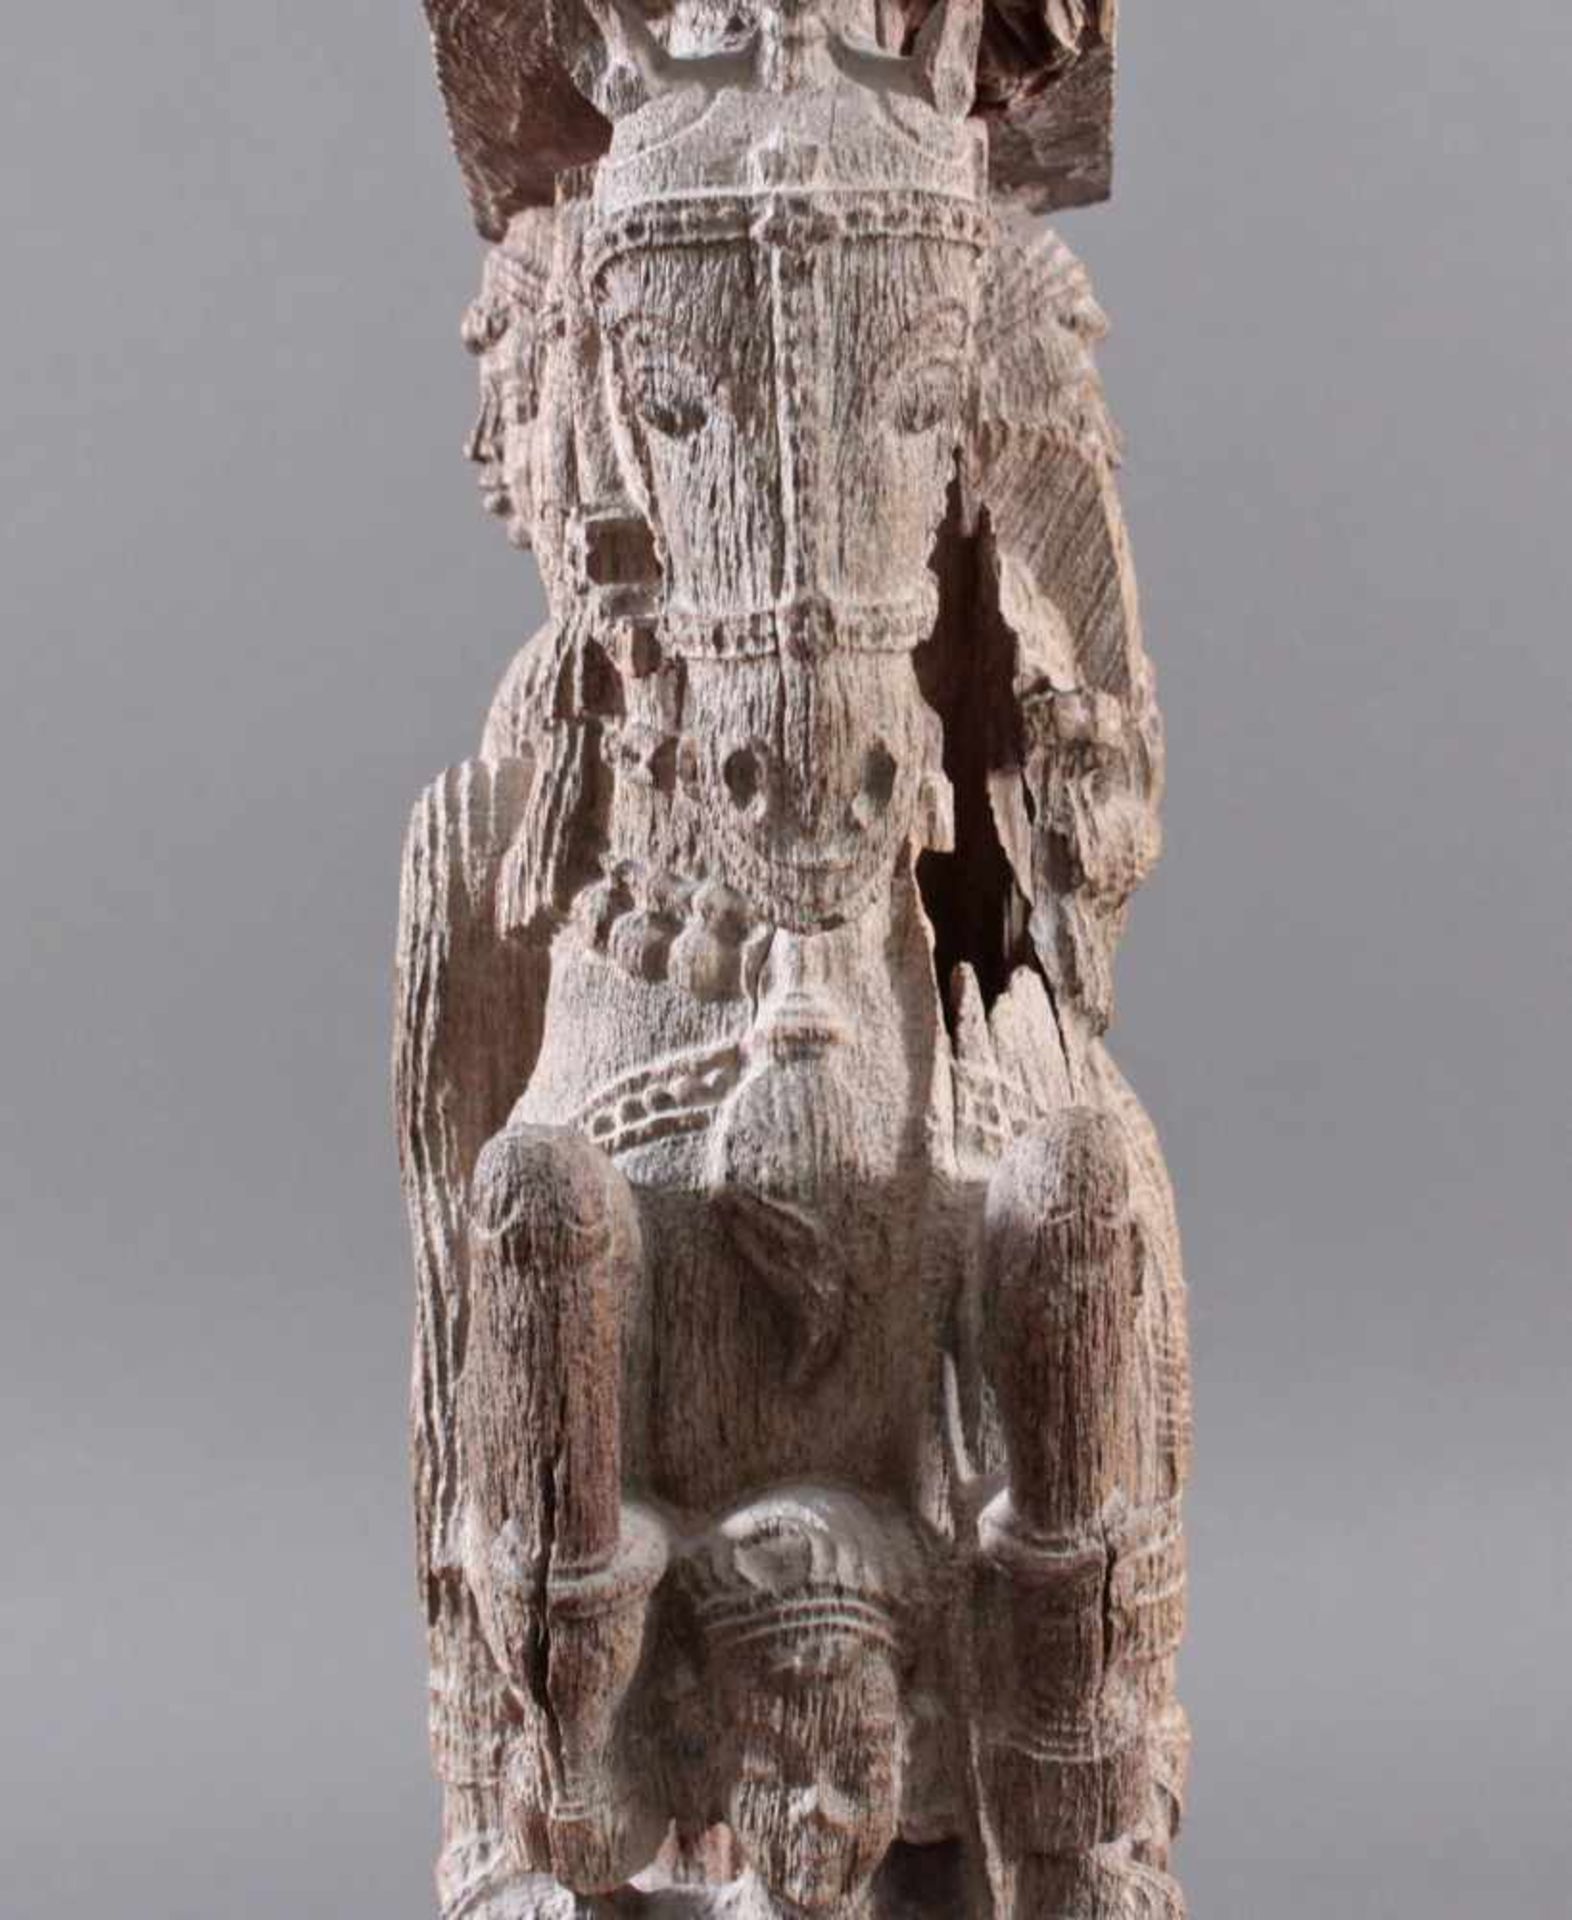 Holzplastik eines Reiters auf einem Pferd, Indien wohl Orissa 15./16. Jh. - Image 7 of 13